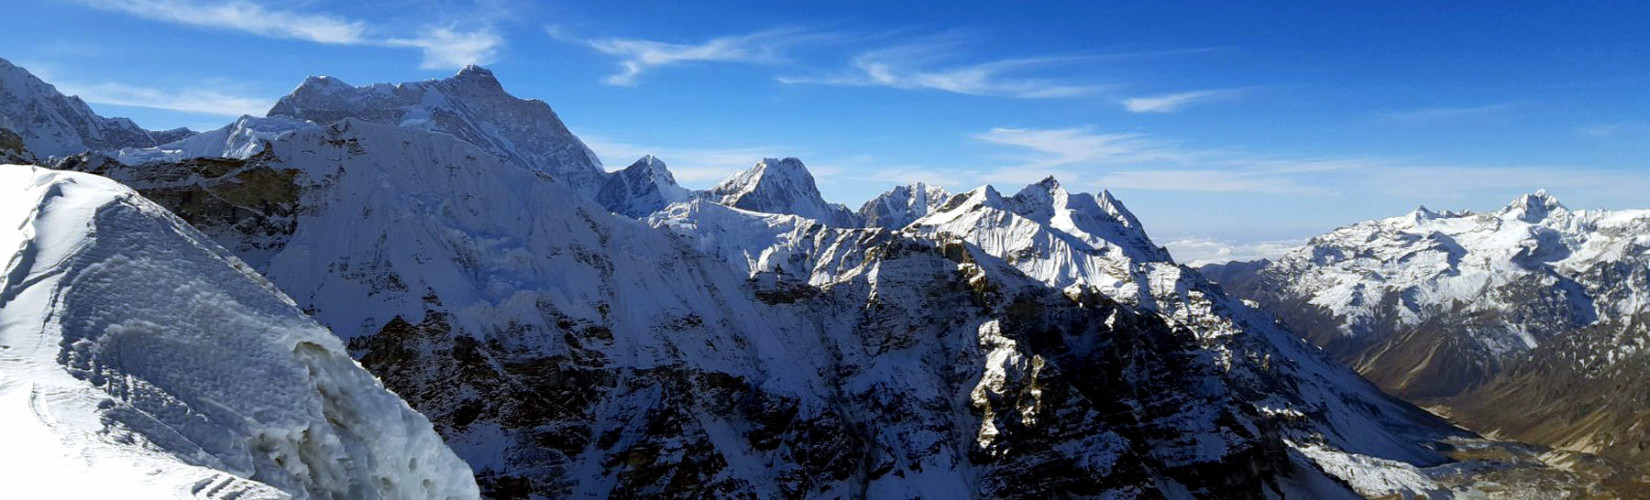 Easiest 6000 meter peaks in Nepal to climb